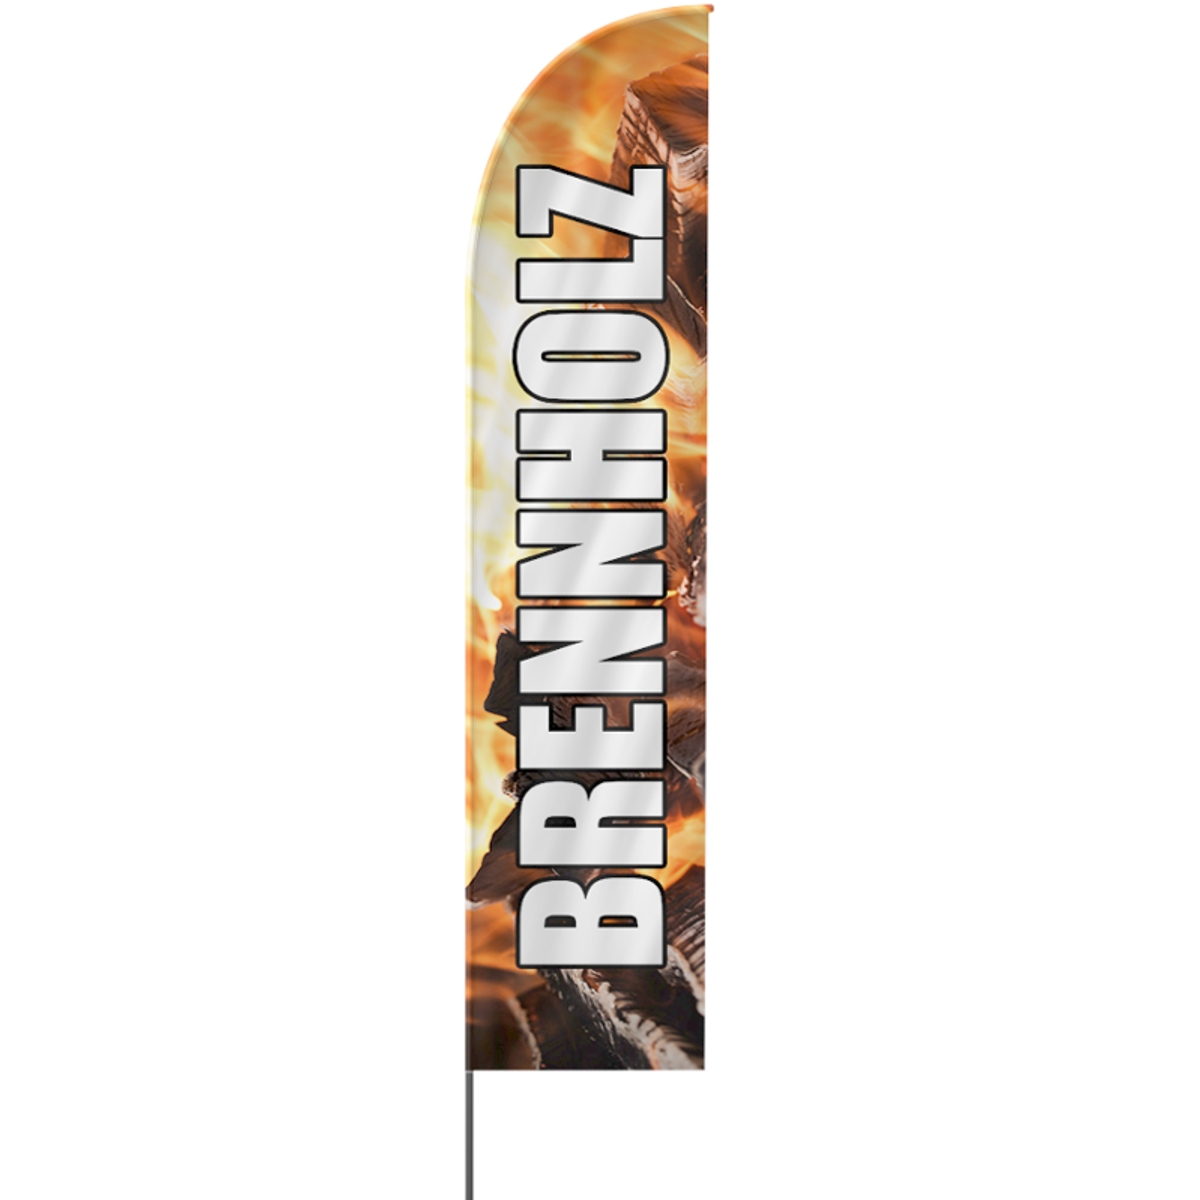 Straight | Brennholz Beachflag (4122)